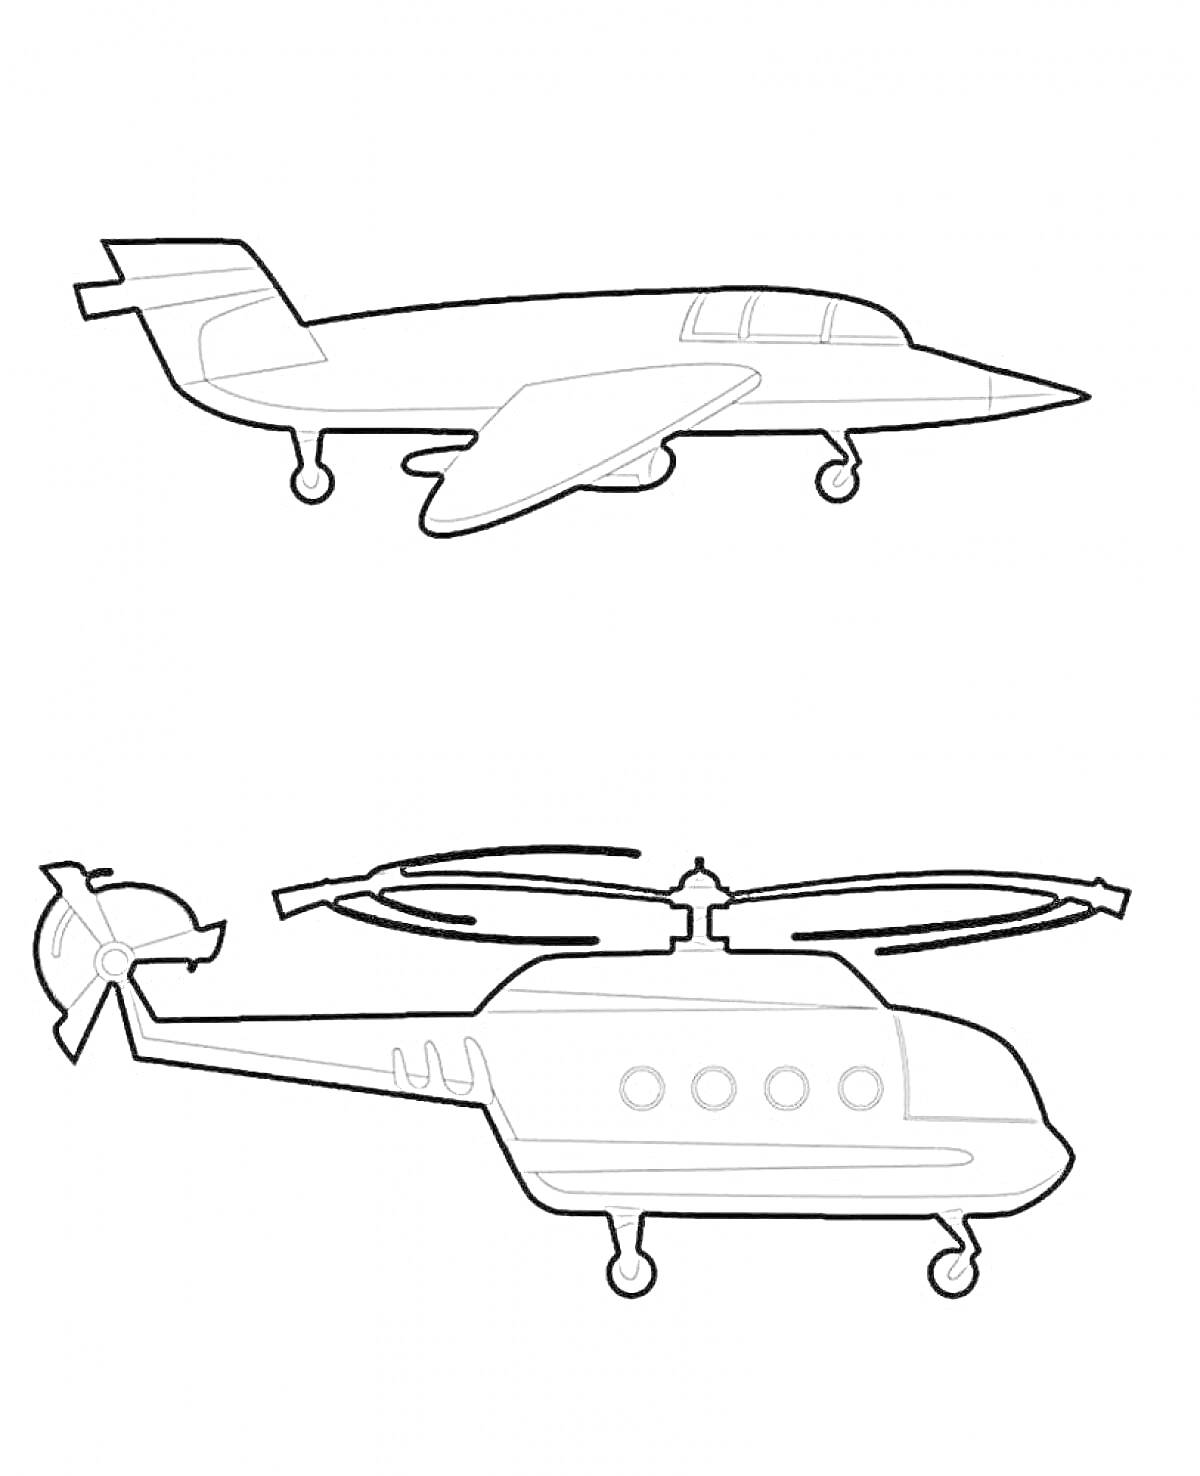 Раскраска Самолет и вертолет - раскраска